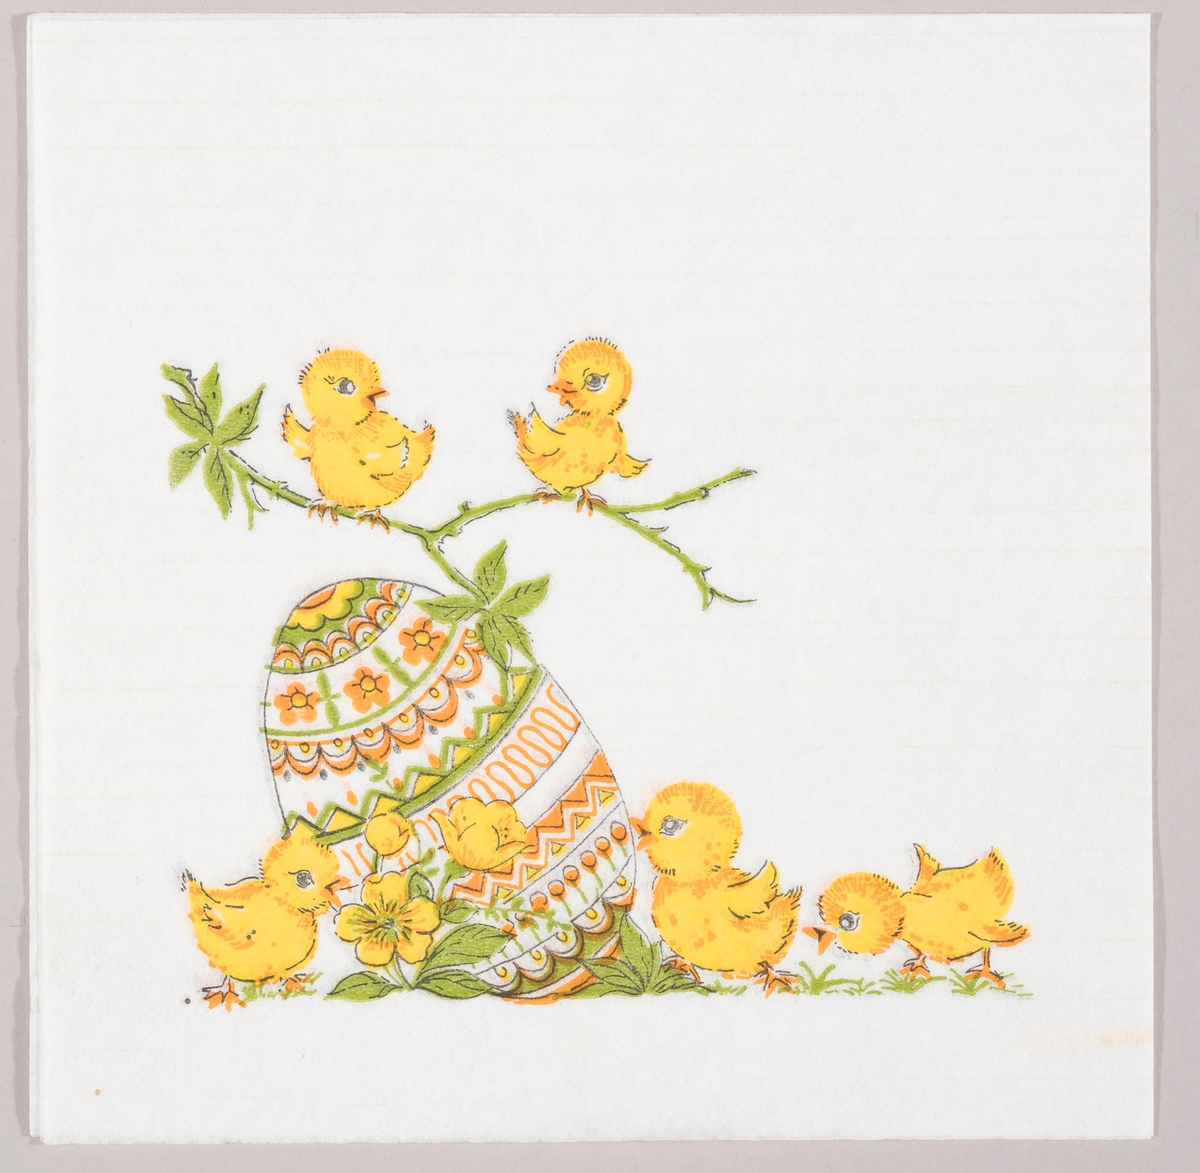 Et stort dekorert påskeegg, kyllinger på en gren og på bakken med gule blomster.